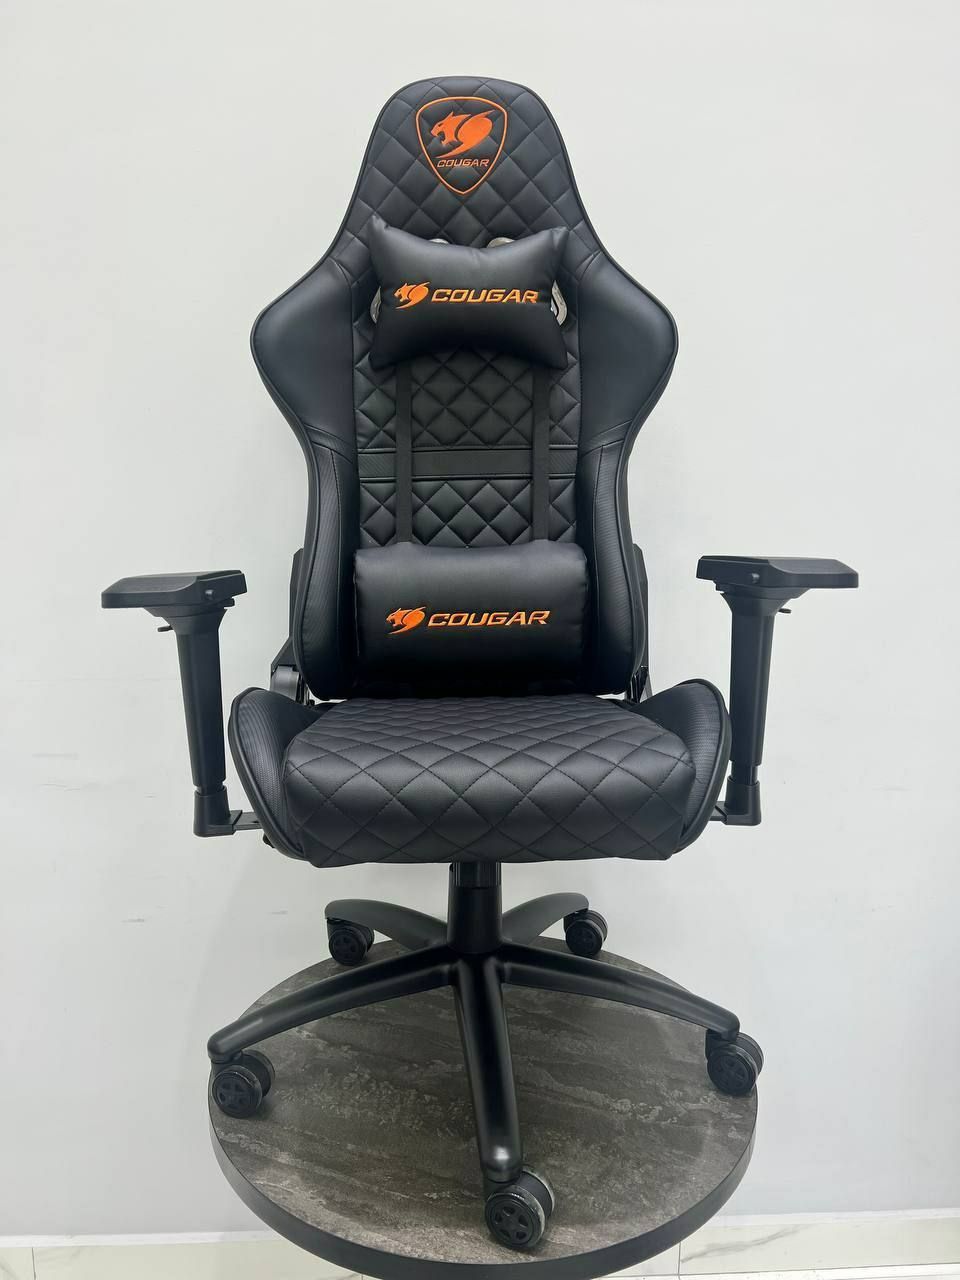 Геймерское кресло Cougar black 4 D. Игровые кресла со склада